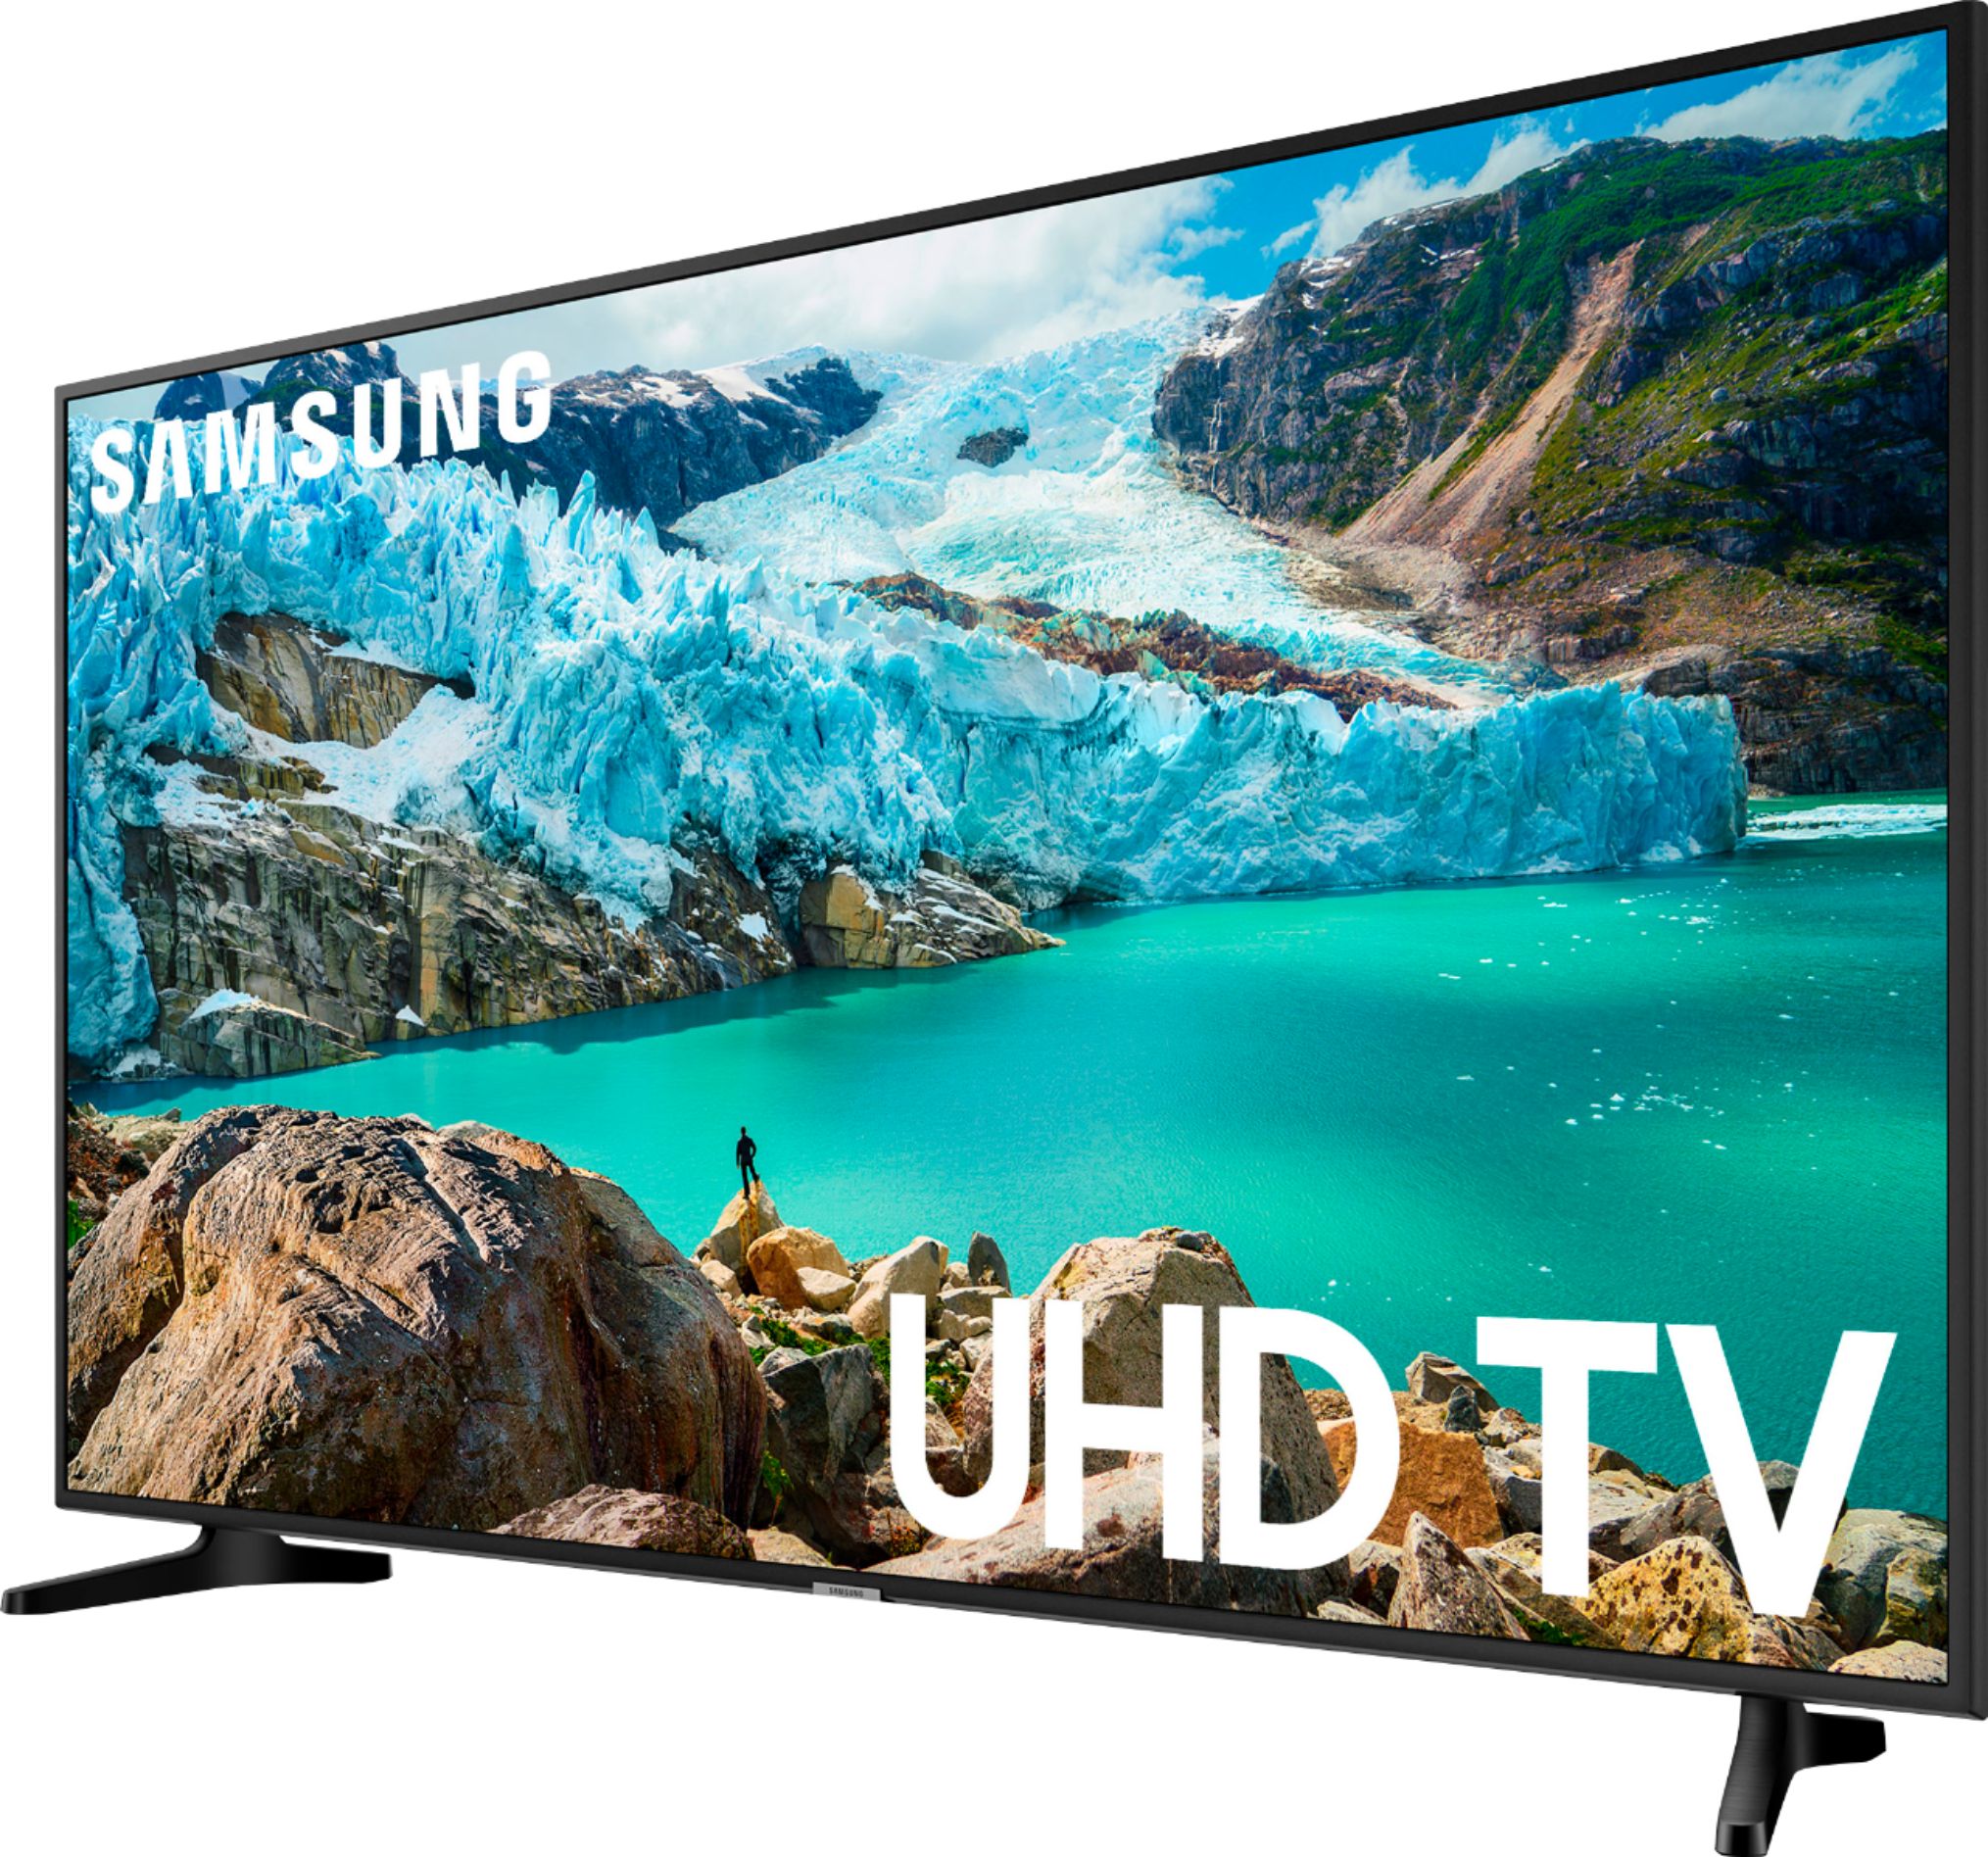 Samsung 43" Class 6 Series LED UHD Smart Tizen TV - Best Buy